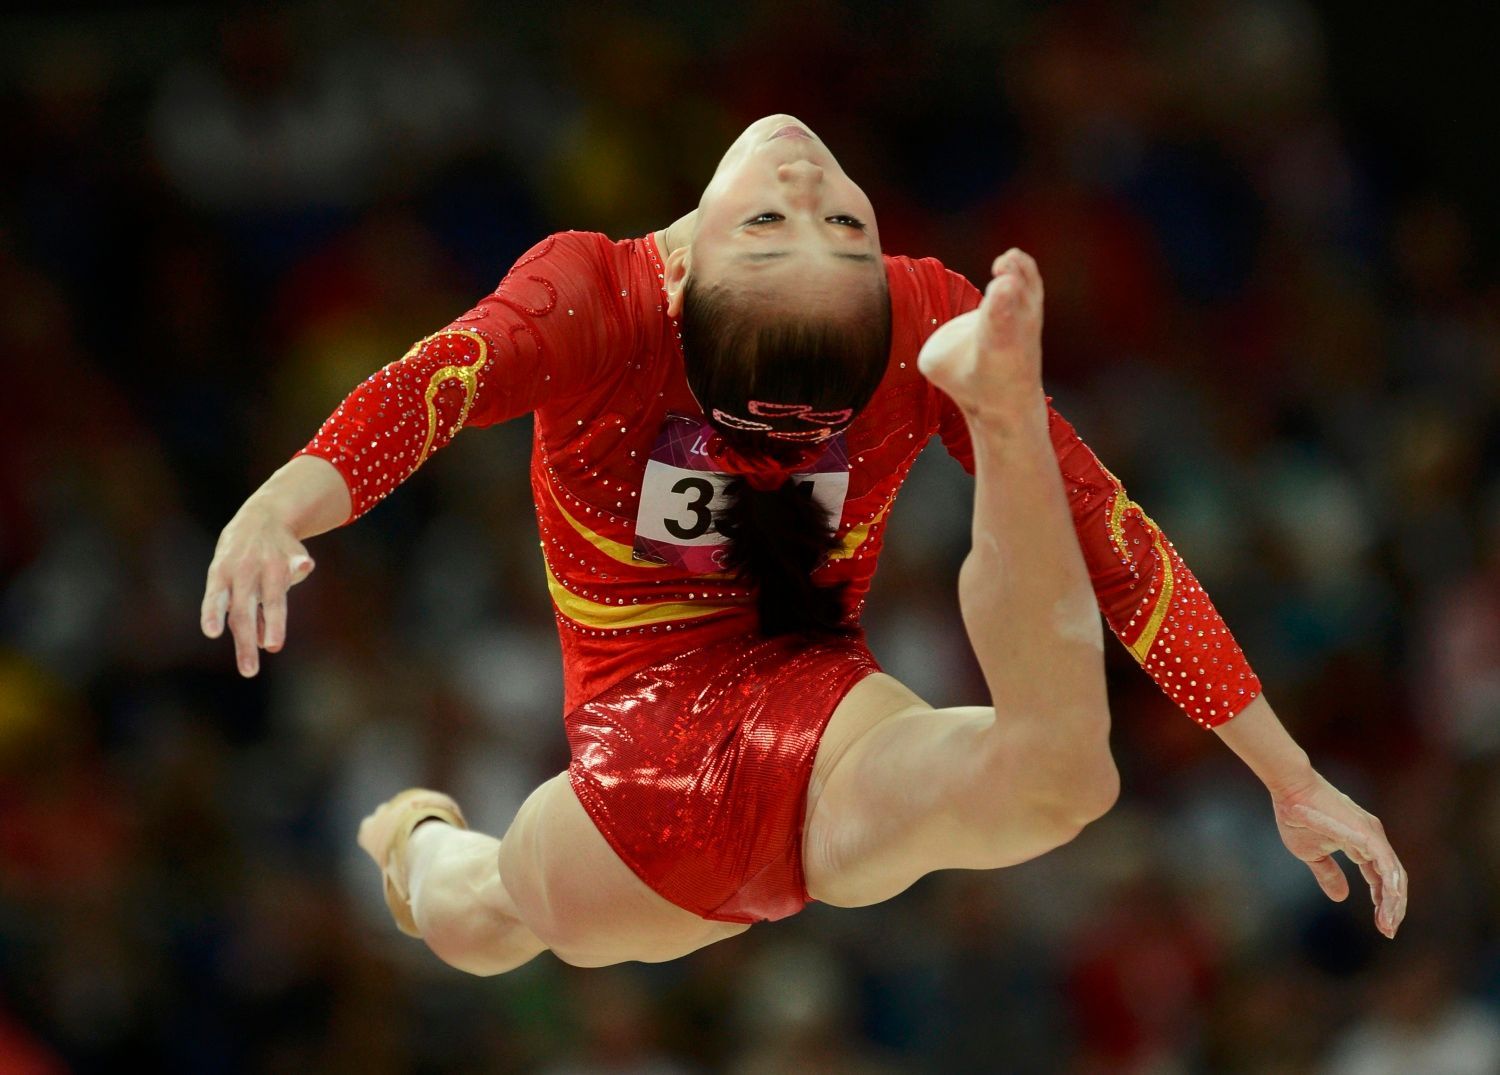 Čínská gymnastka Sui Lu během kvalifikace na OH 2012 v Londýně.